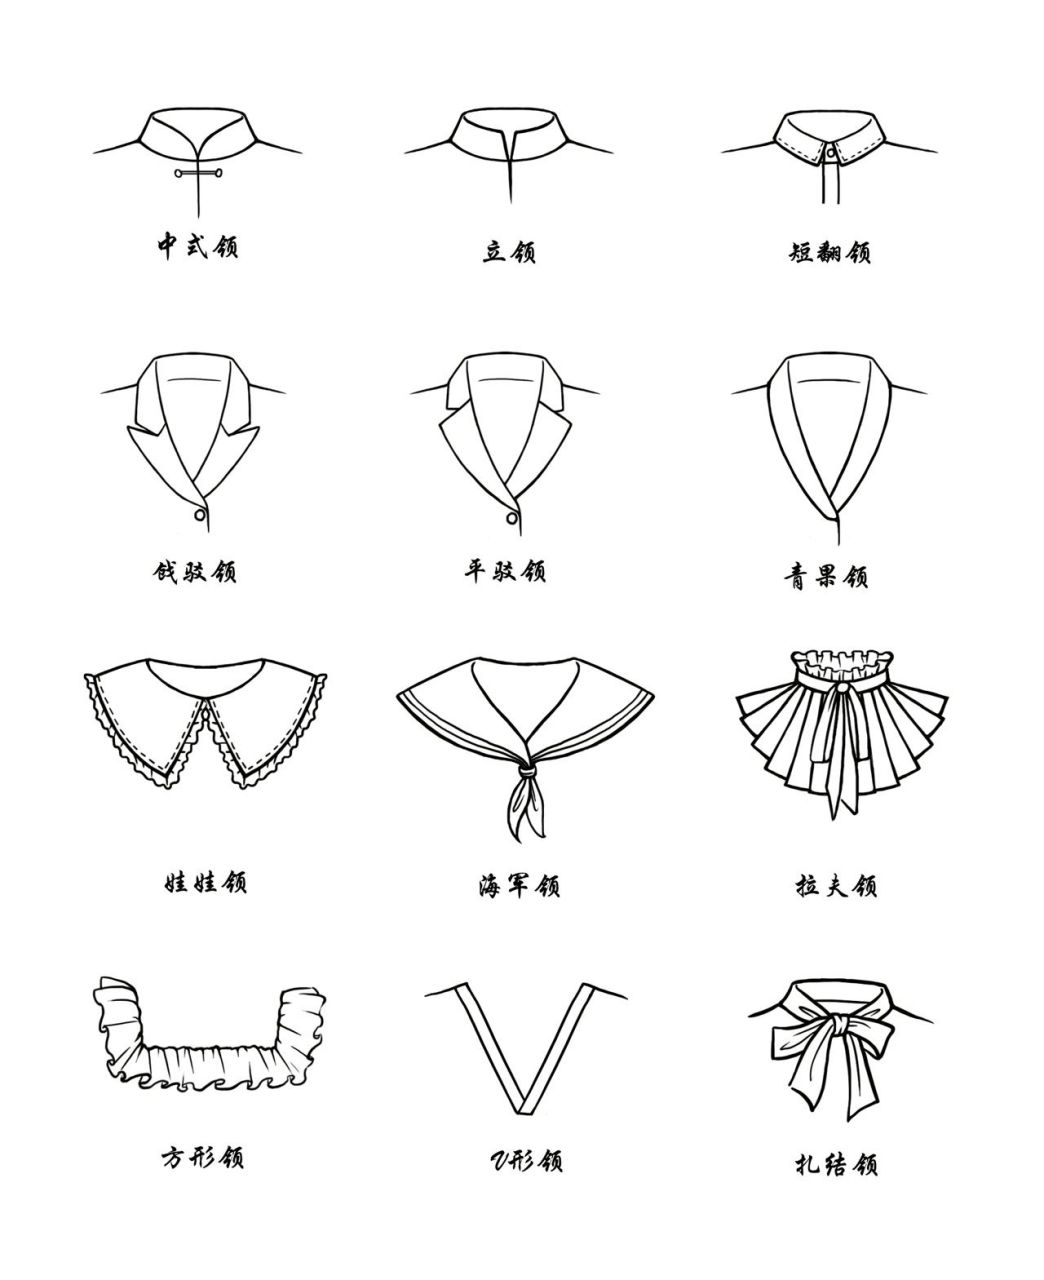 服装设计款式图/12款常见领型 各种各样领子设计都